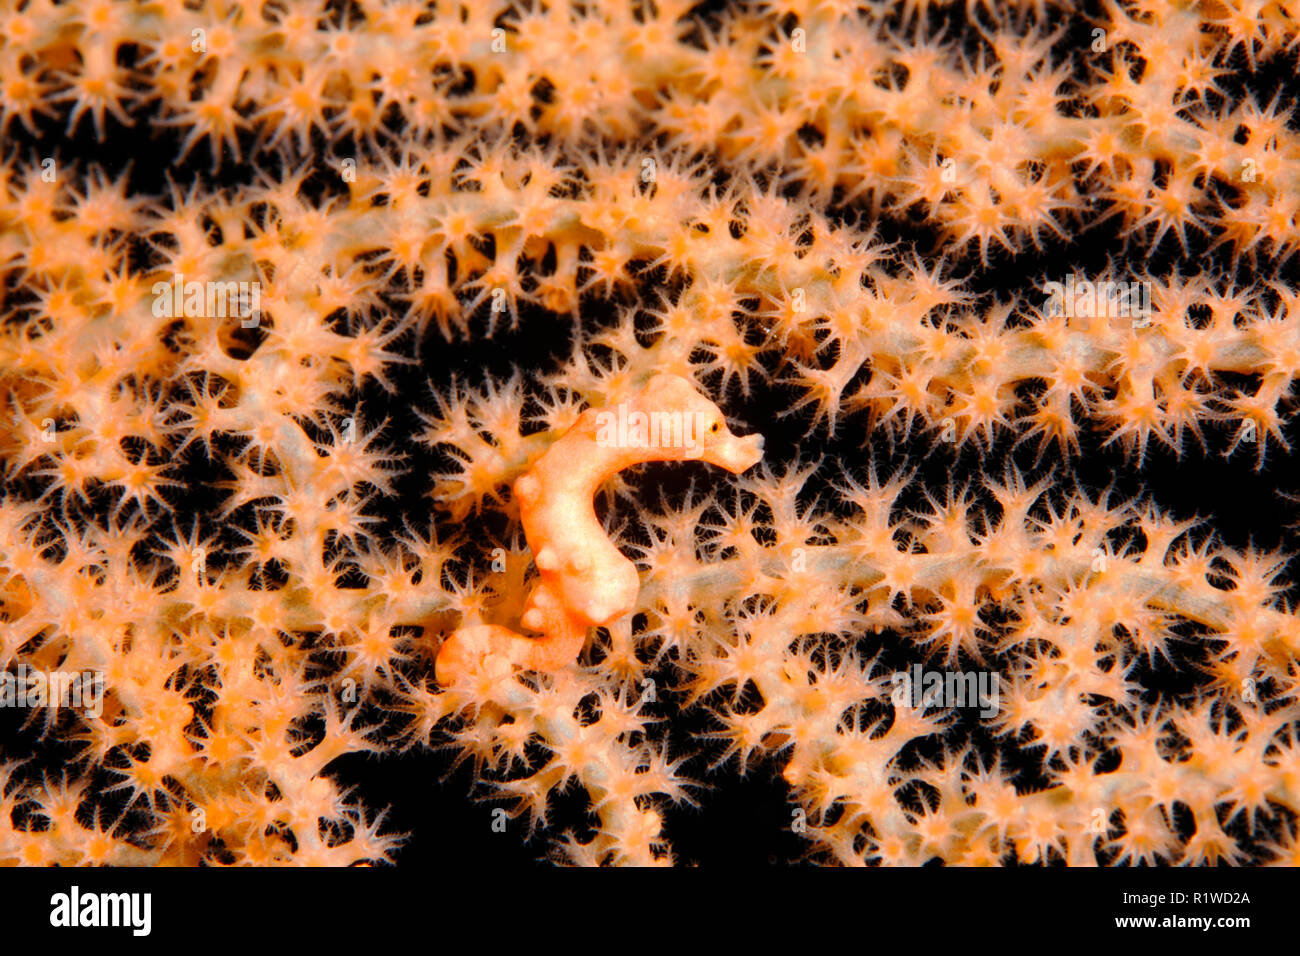 Di Denise cavalluccio marino pigmeo (Hippocampus denise), dimensioni 10mm, gorgonie chiuso con polipi, Selayar, Sulawesi meridionale Foto Stock